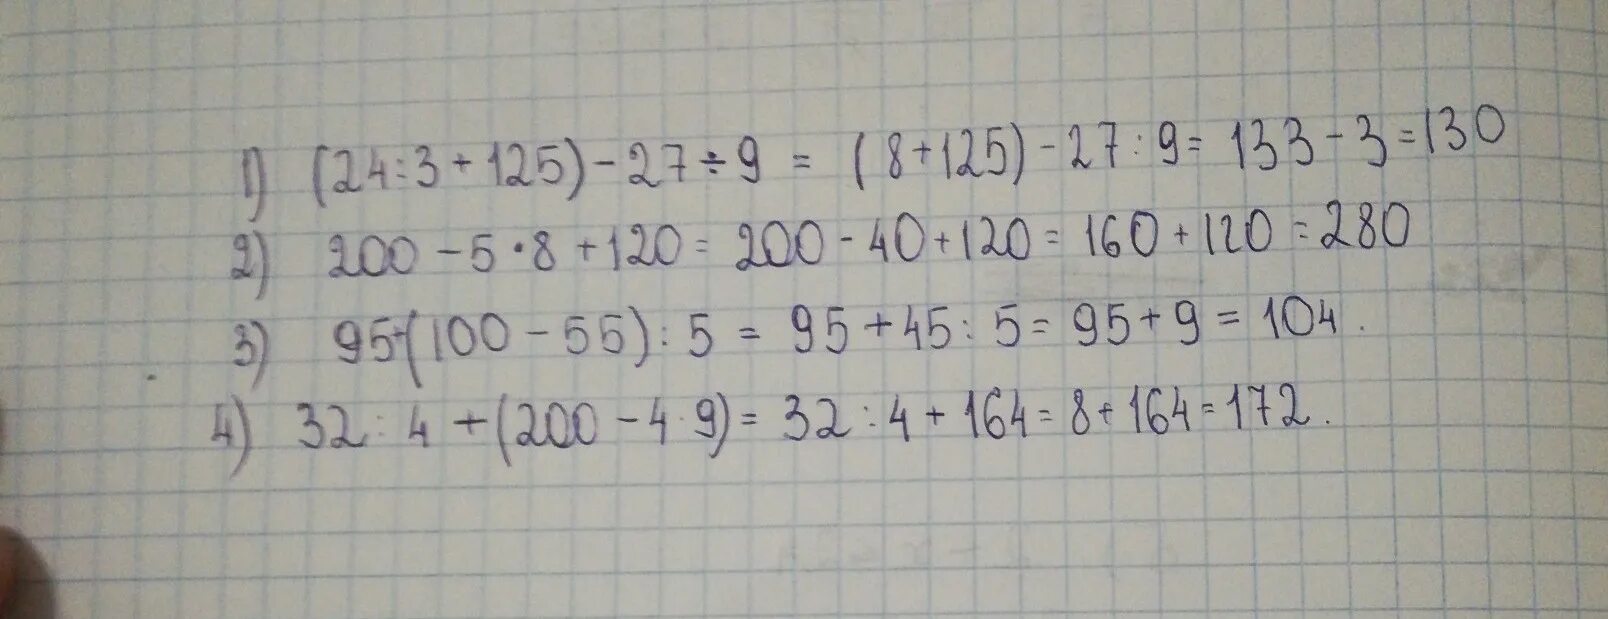 1 27 125 1 1 5. 4.200/25. 200•4+200=. 100-27×9-4×3. 125√5:5√5=.